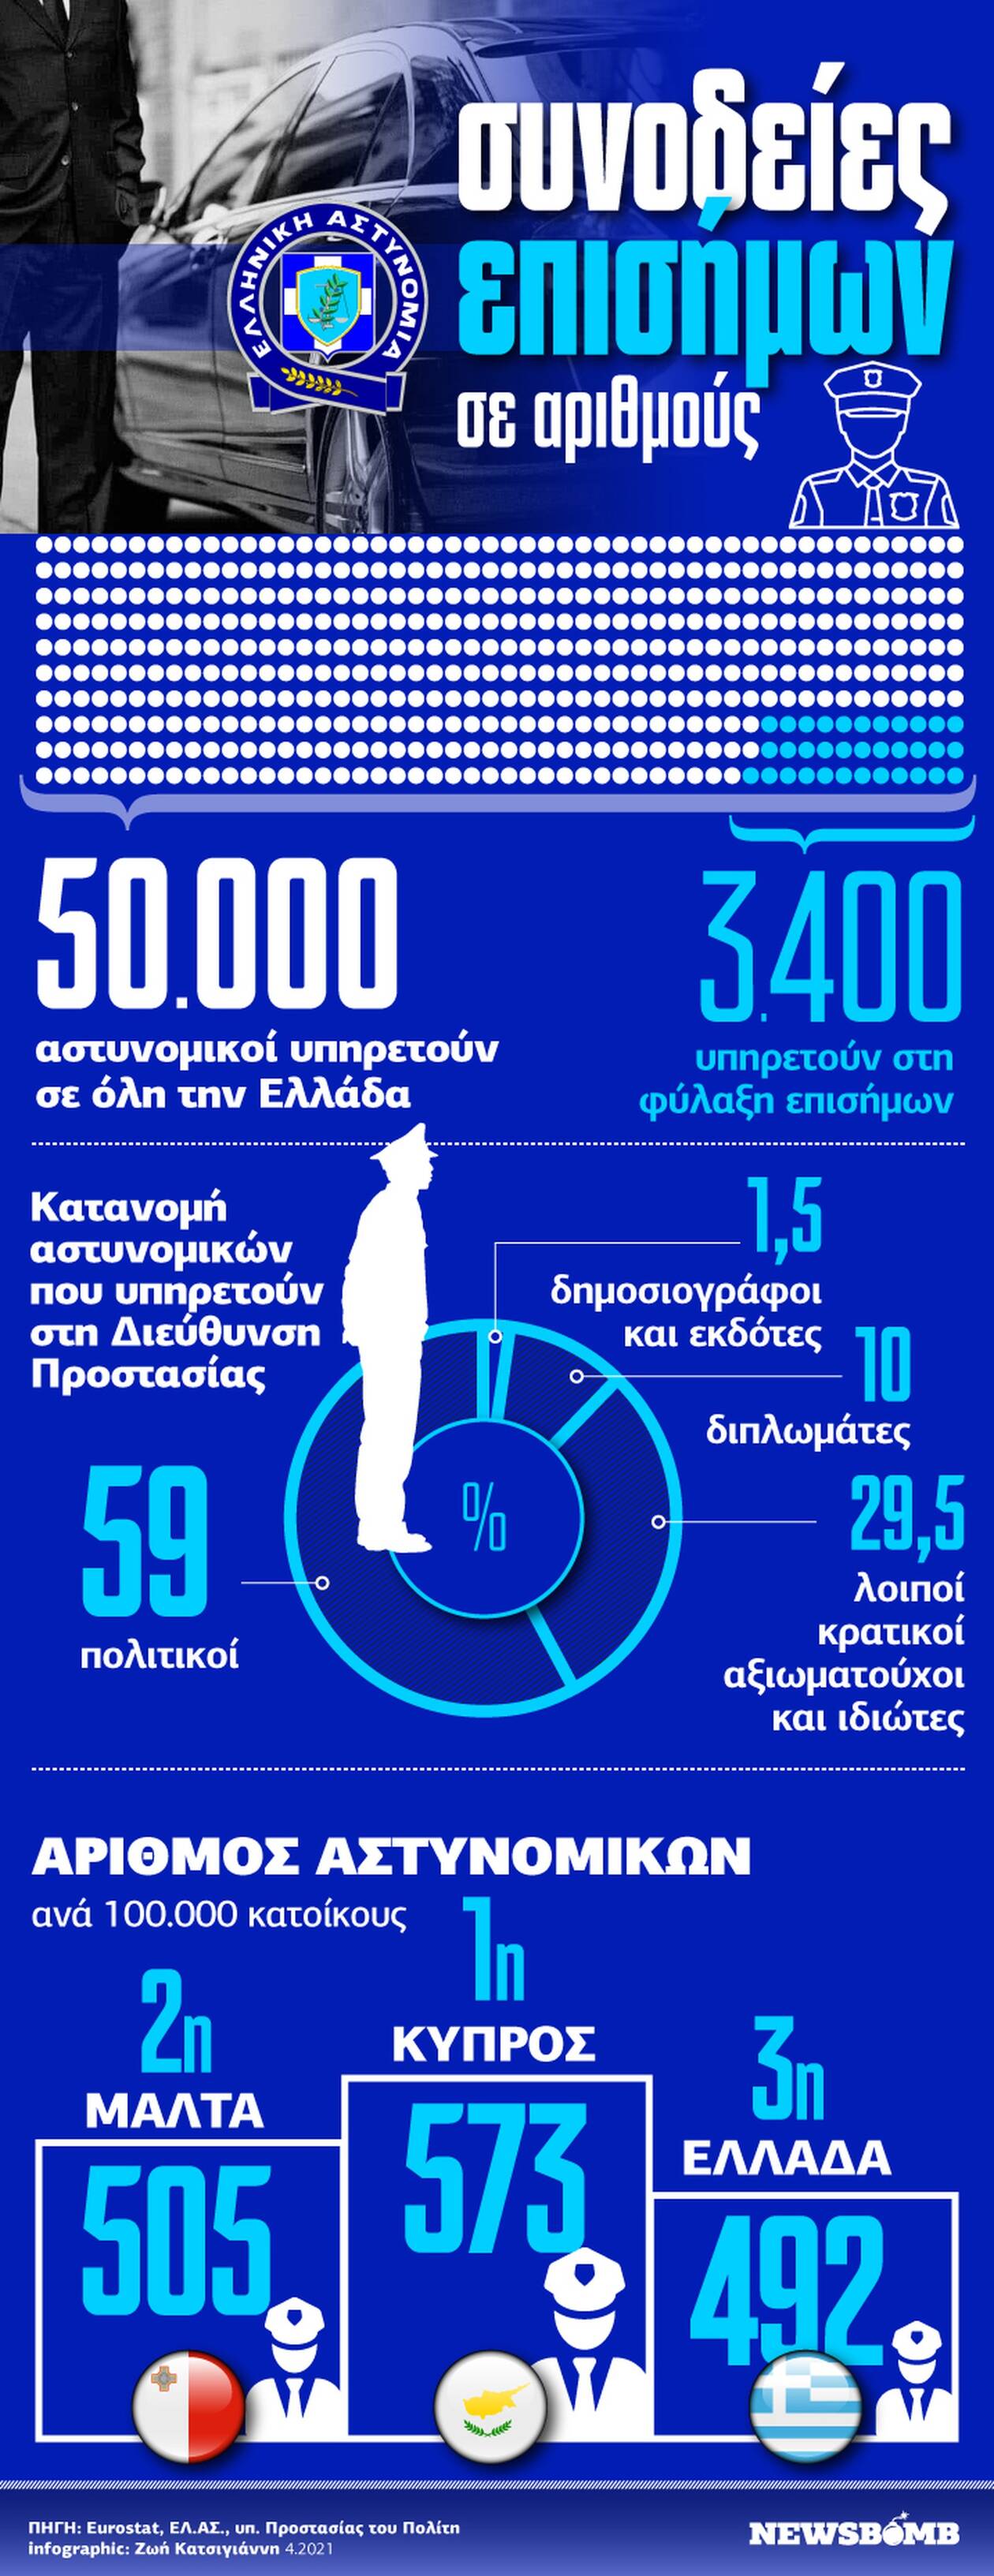 Αστυνομία: Ένας... στρατός για πολιτικούς και επισήμους - Δείτε το Infographic του Newsbomb.gr